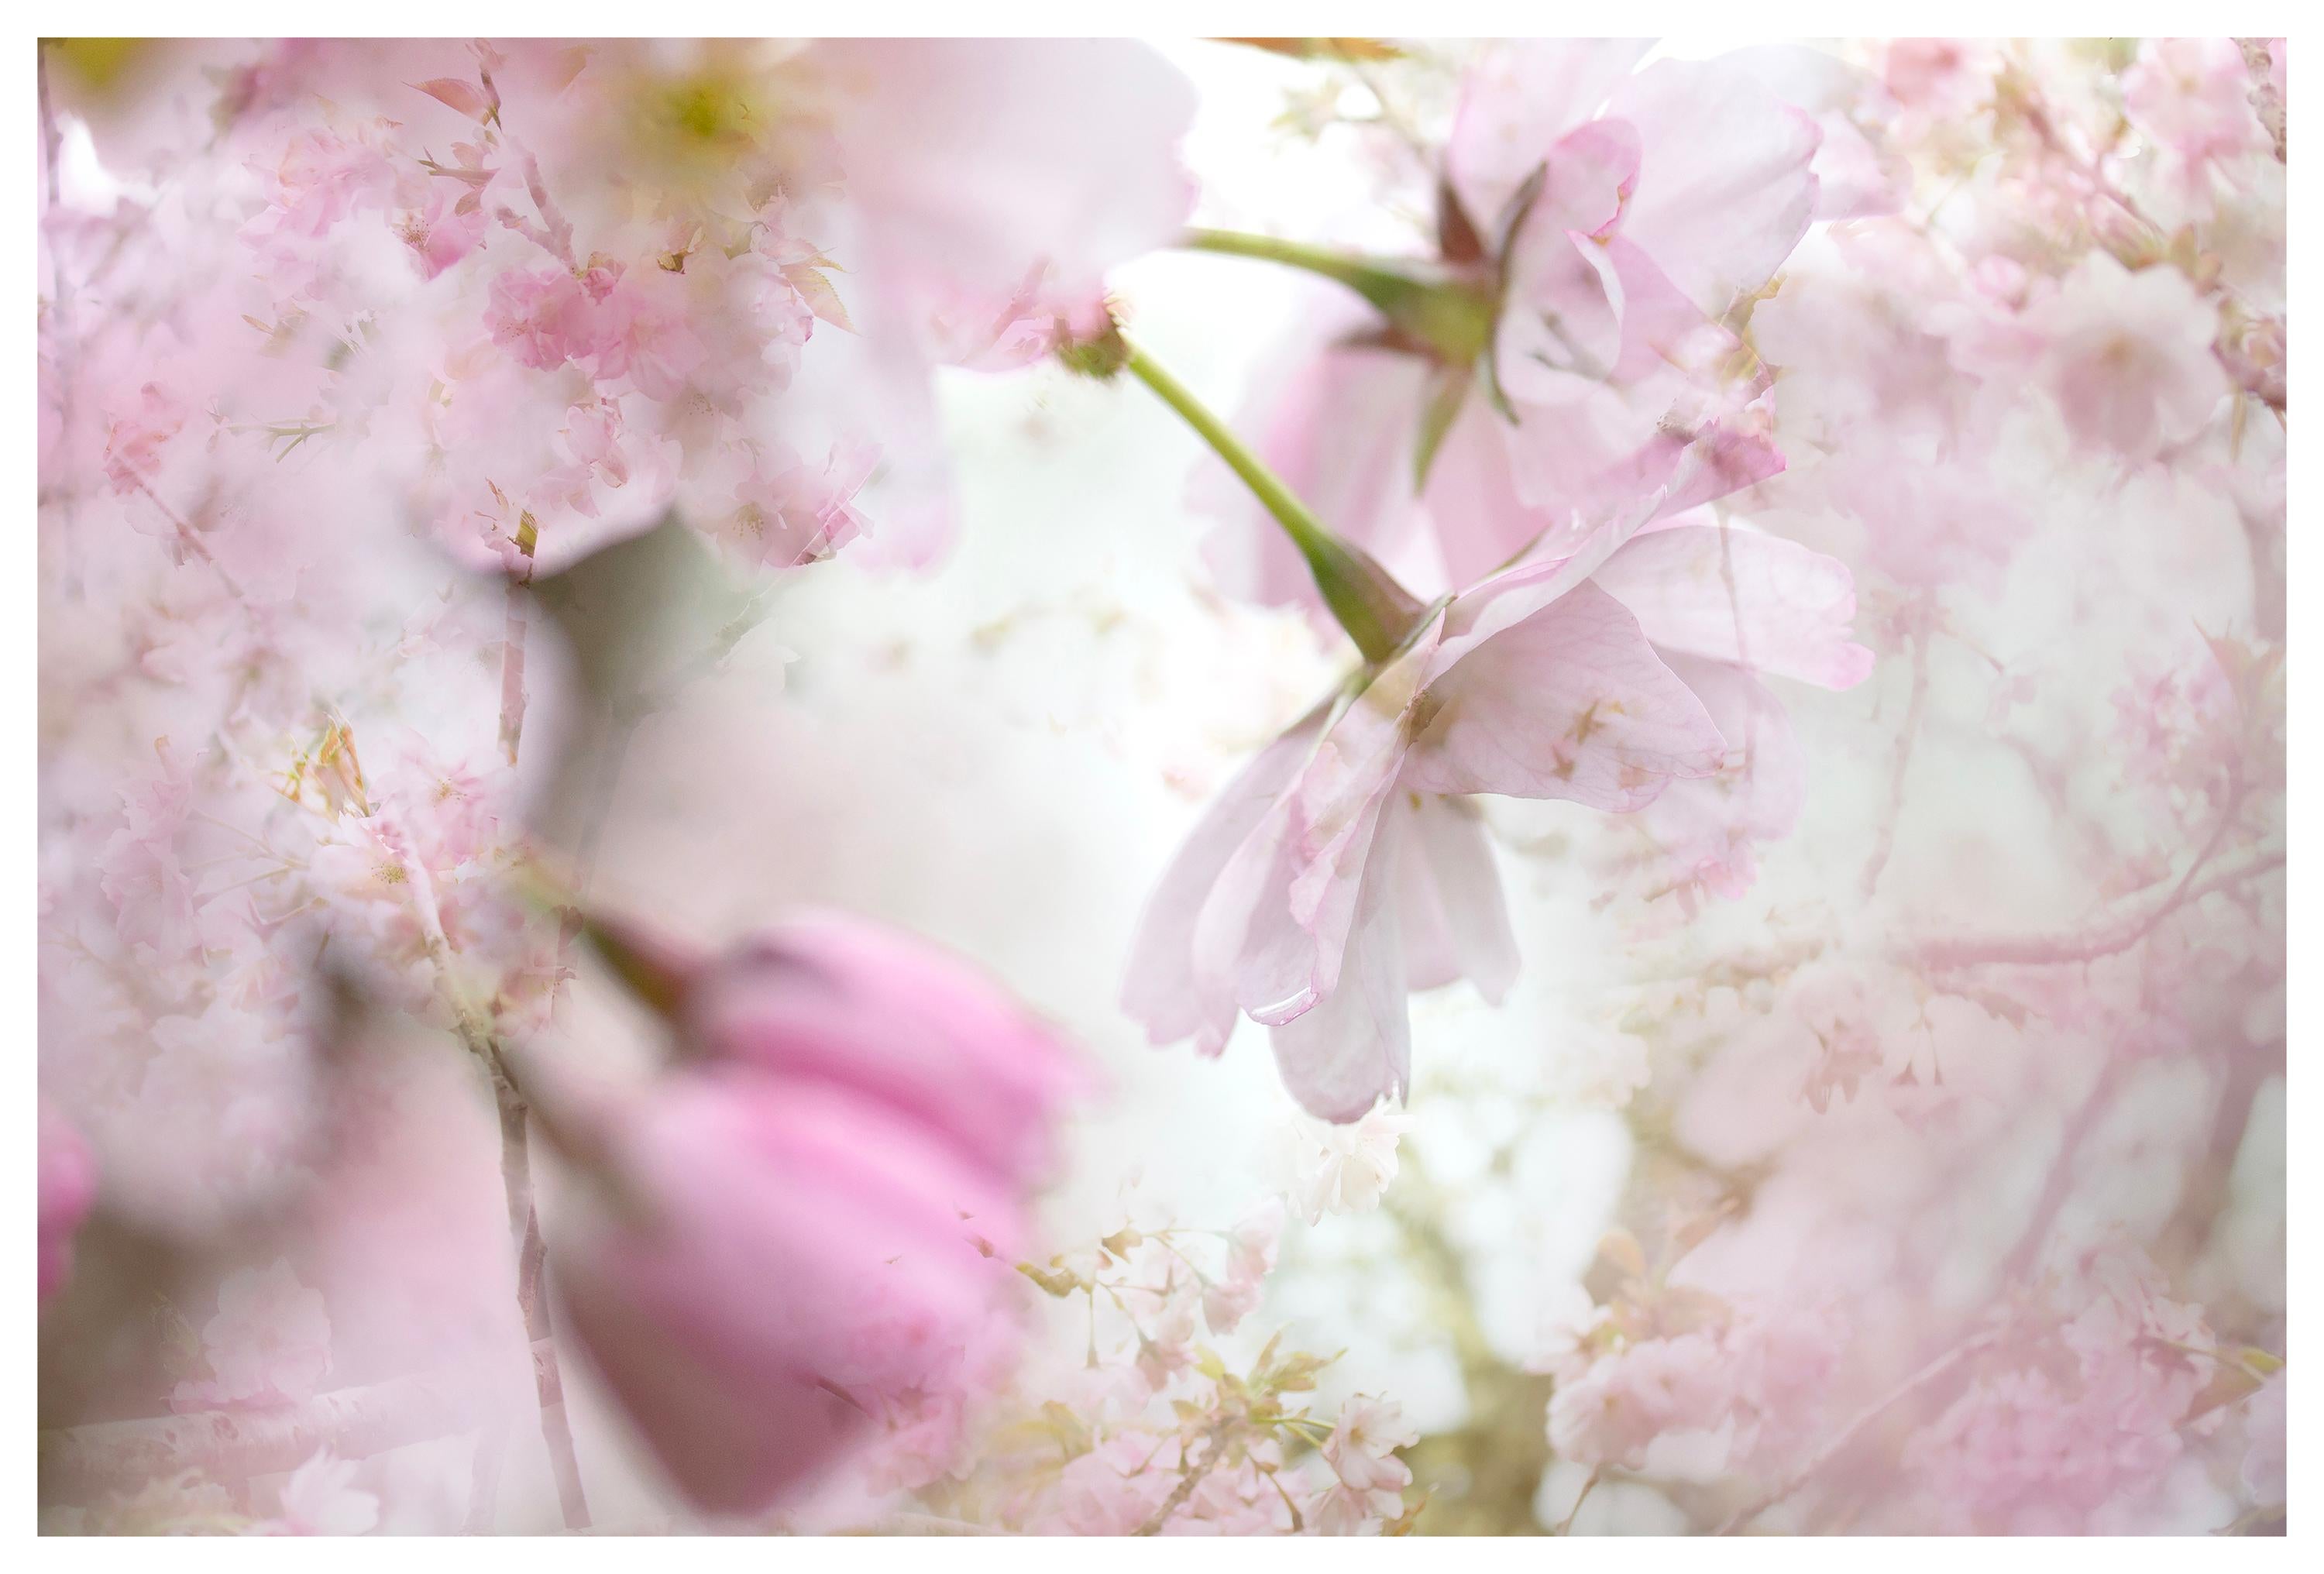 Abstract Photograph Sophia Milligan - Photographie du couple de printemps fleurs de cerisier Sakura rose blanc rose nature